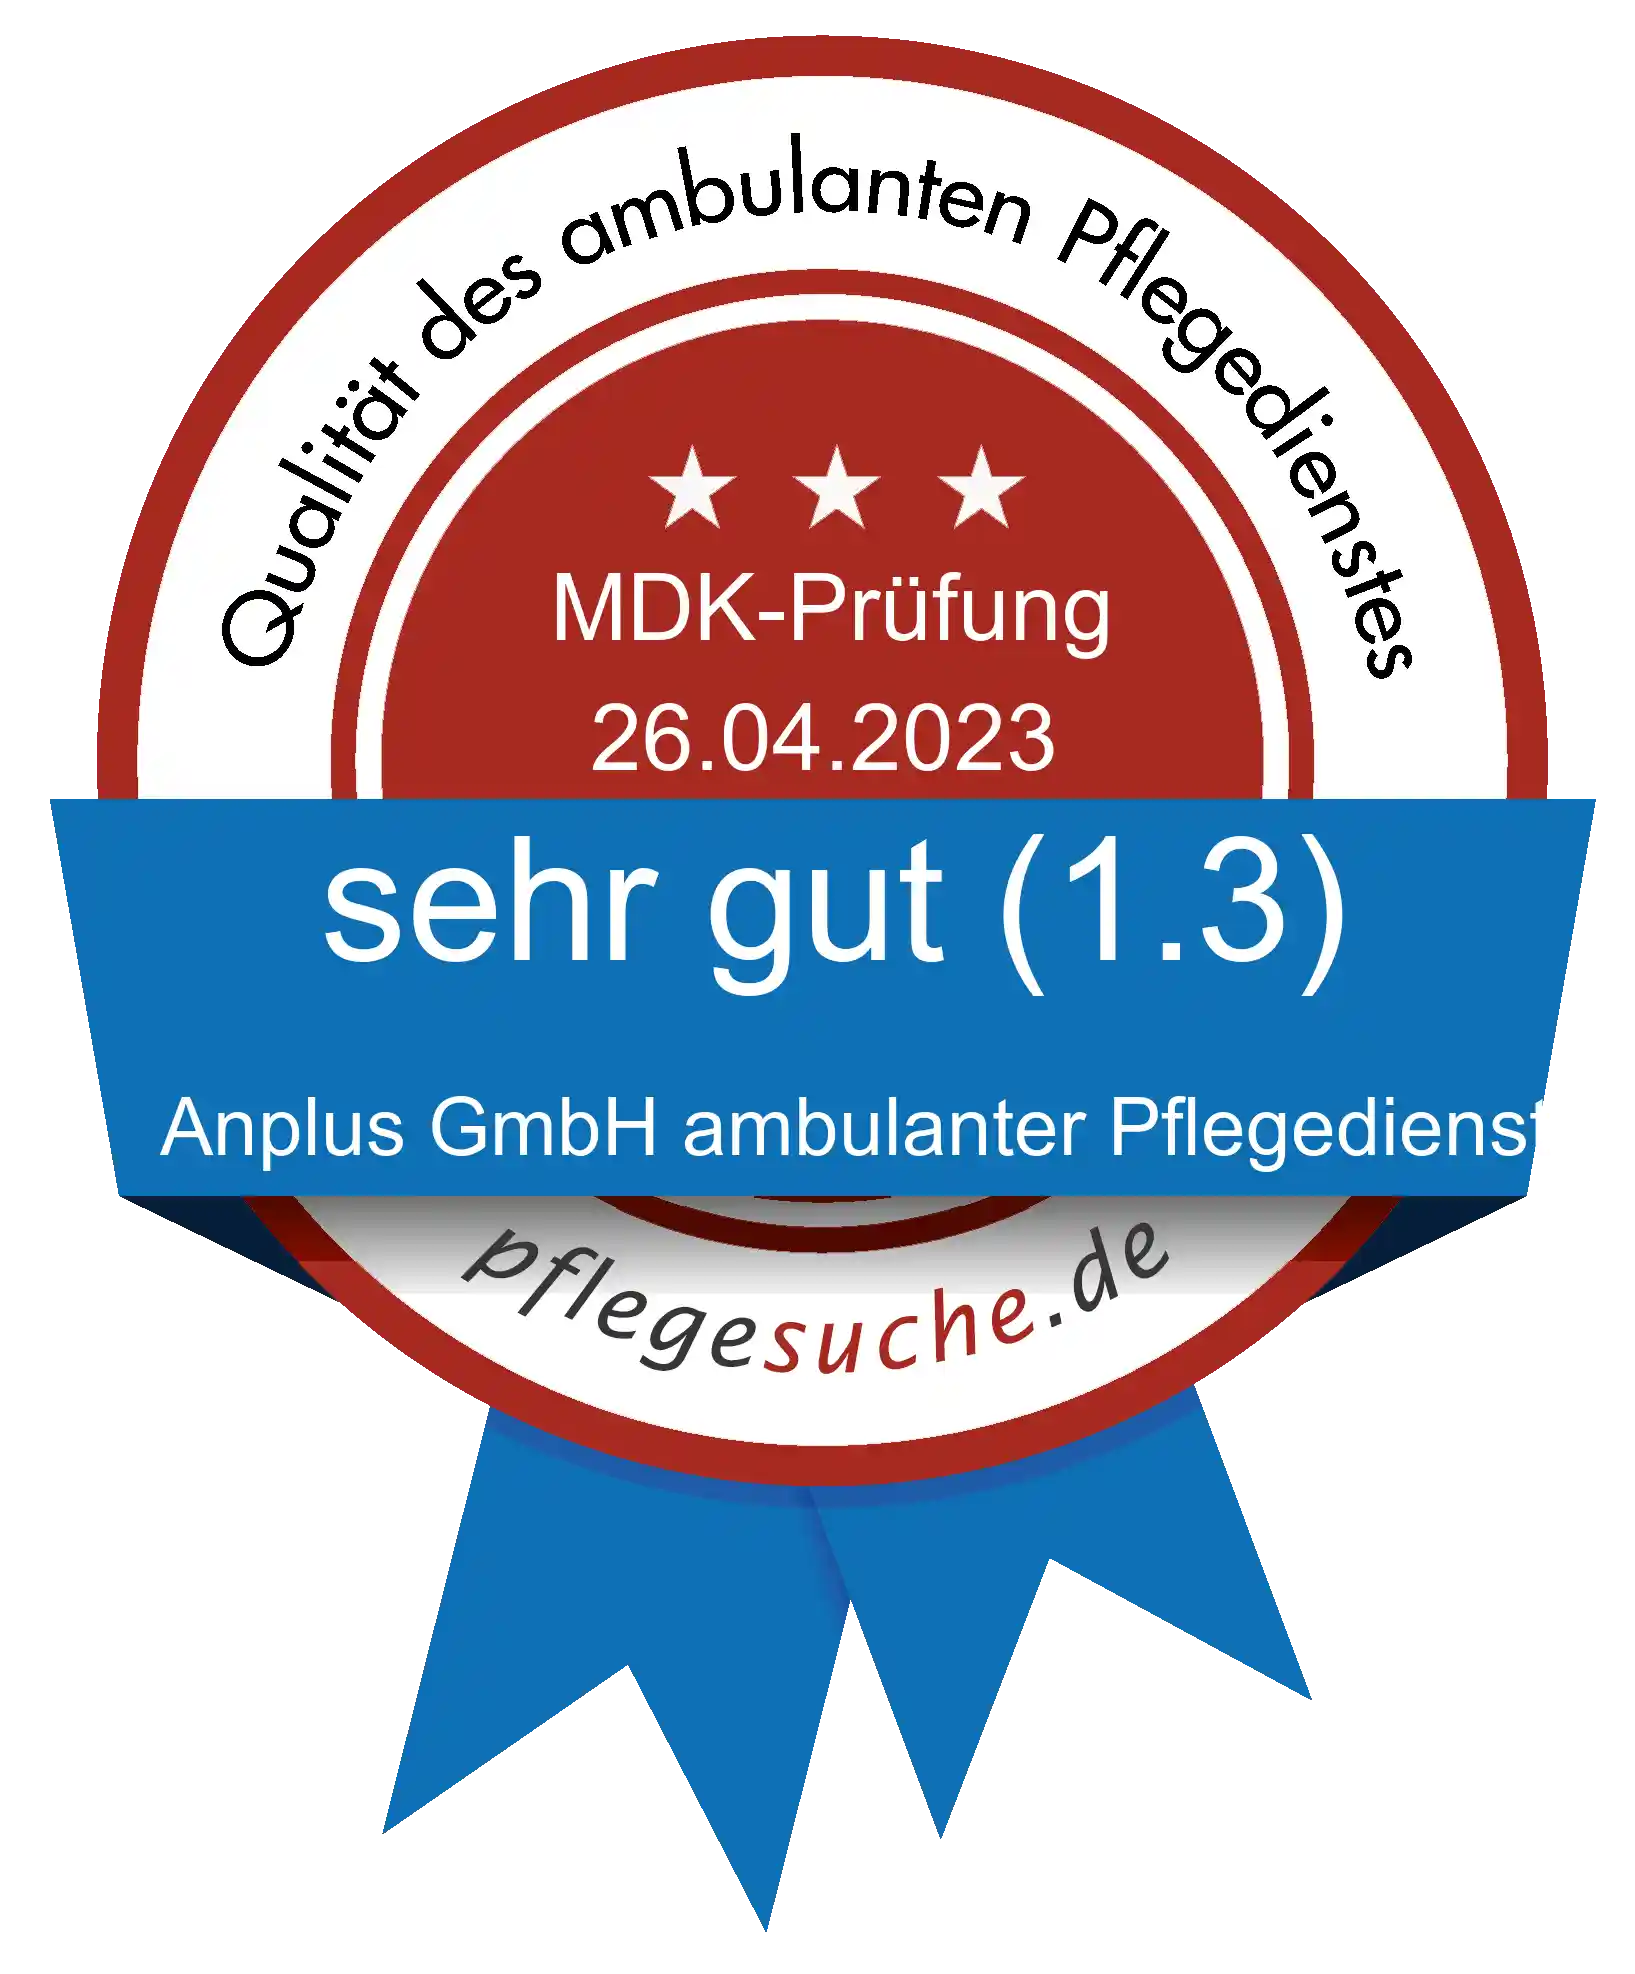 Siegel Benotung: Anplus GmbH ambulanter Pflegedienst